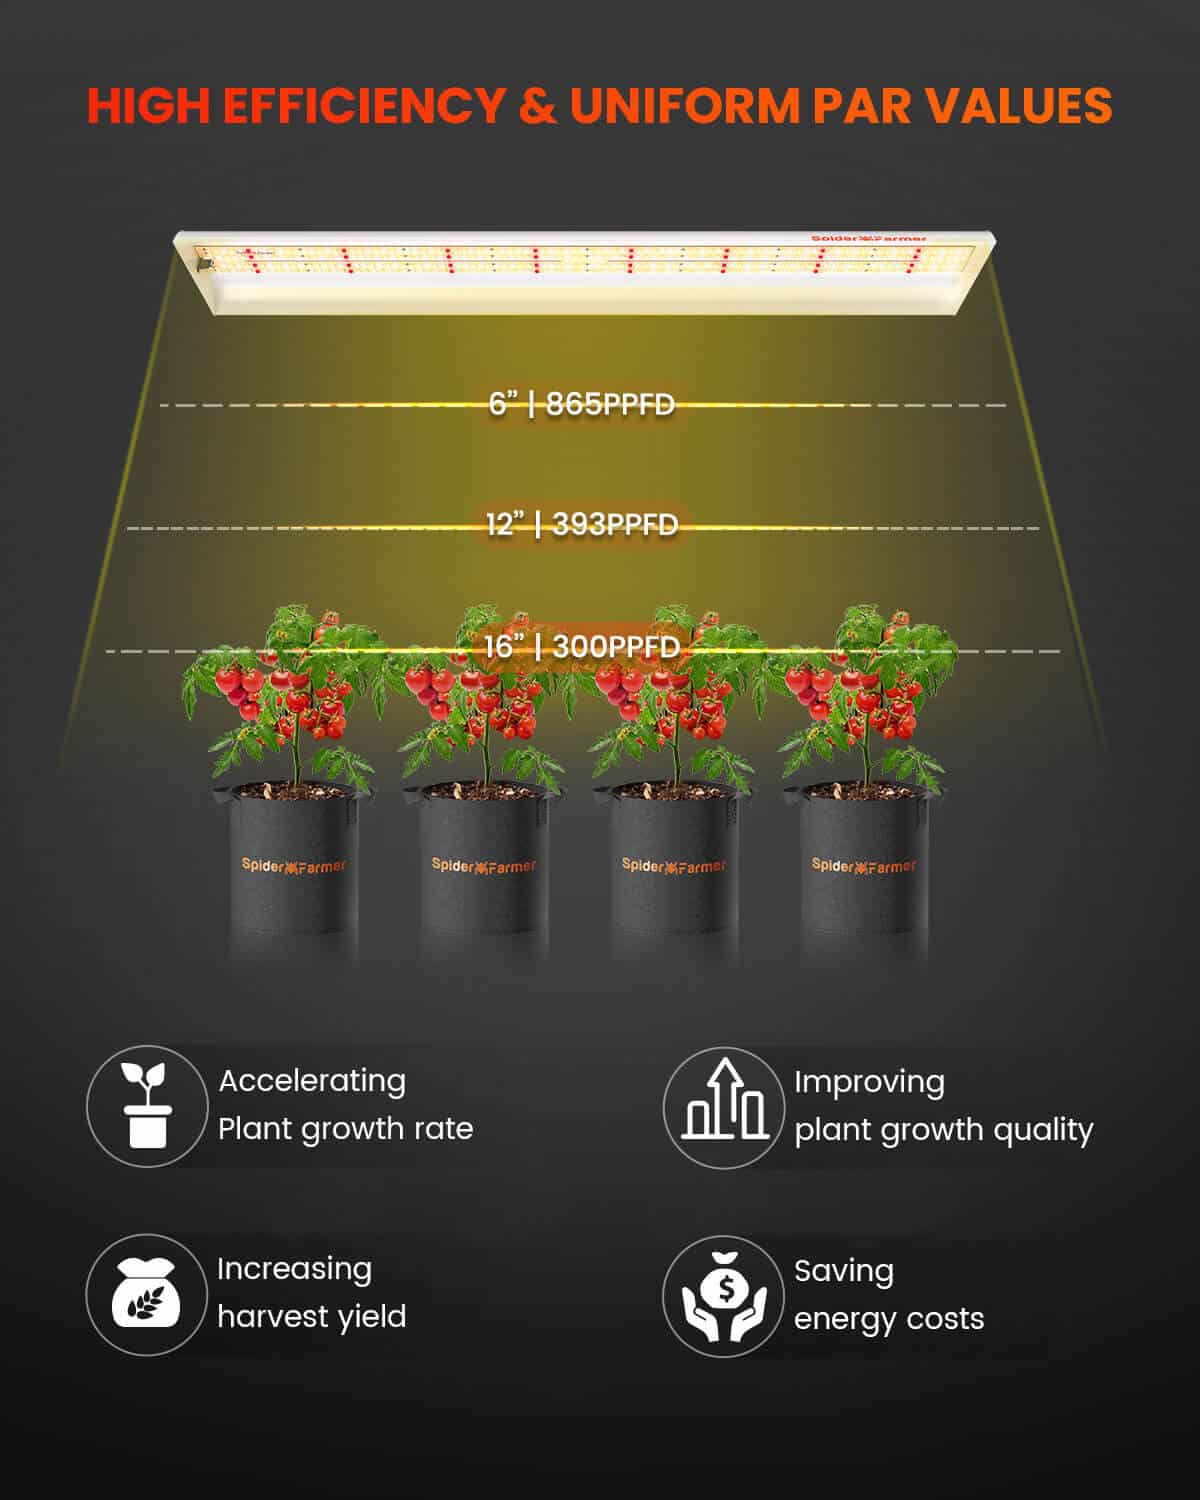 Spider Farmer® SF600 74W LED Grow Light For Veg